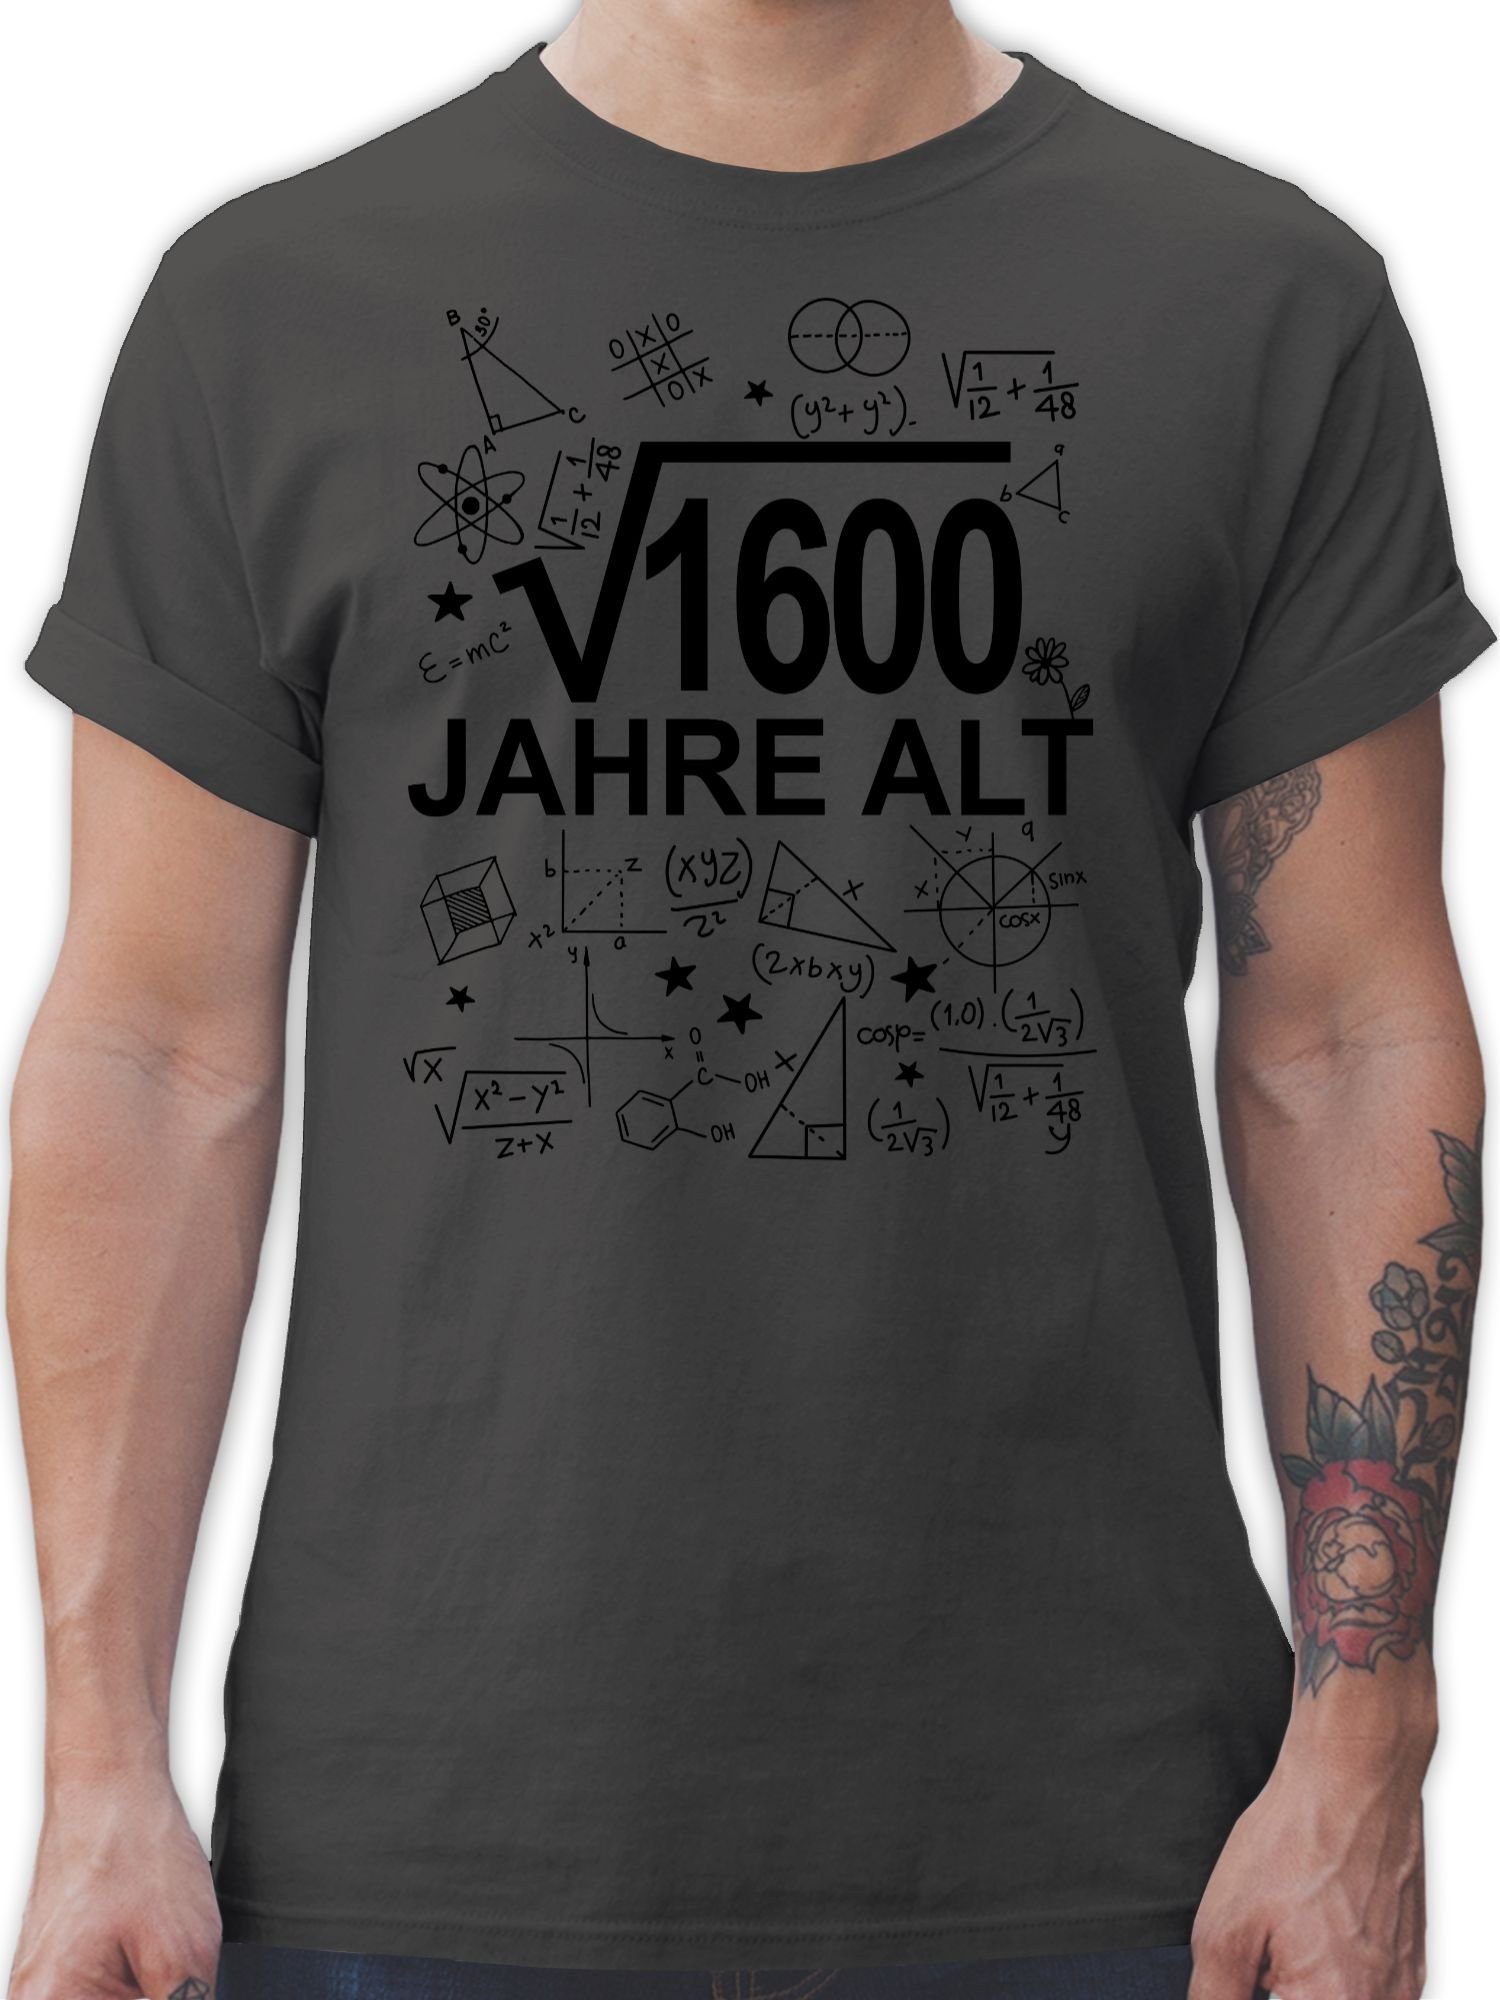 Shirtracer T-Shirt (Wurzel 1600) Vierzig Jahre alt schwarz 40. Geburtstag 1 Dunkelgrau